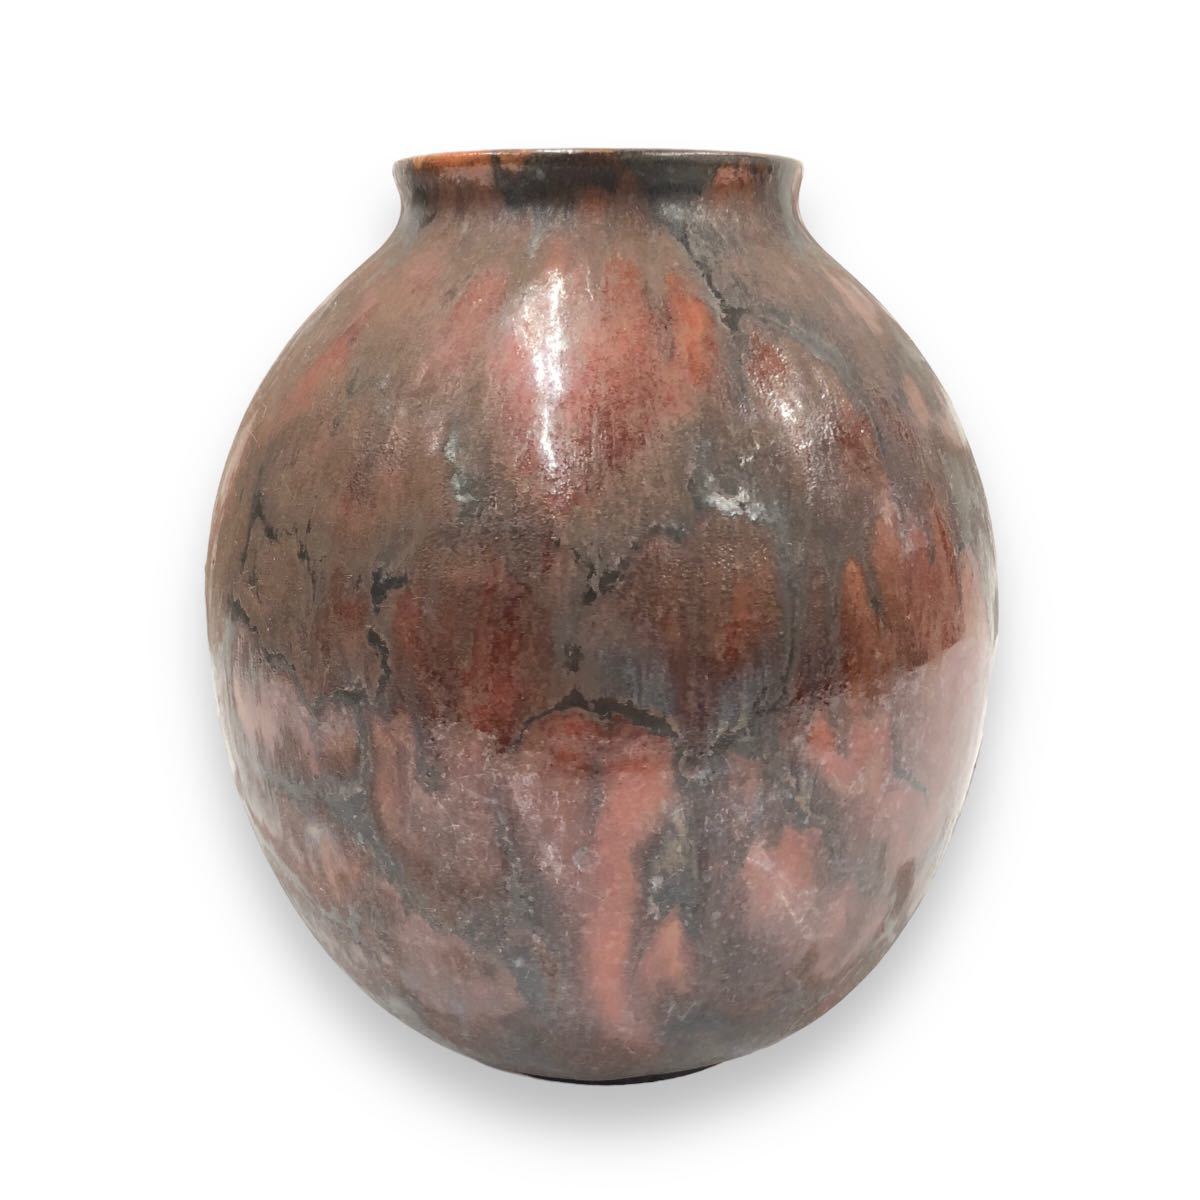  керамика . ваза цветок основа запад Германия las коричневый - фирма интерьер античный retro 